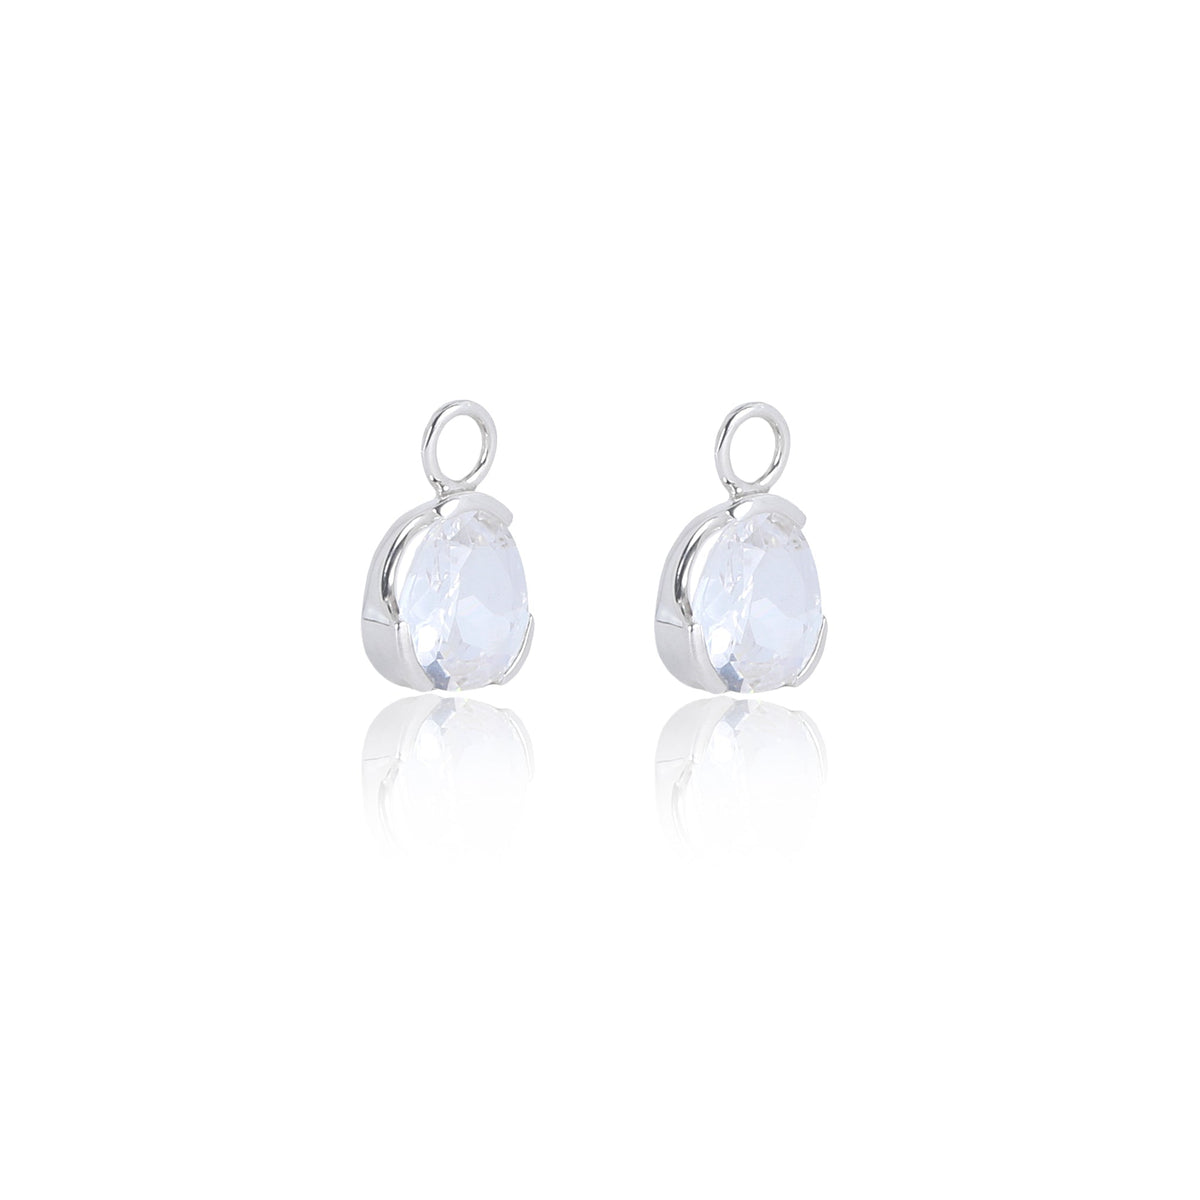 Foundation Gemdrop Hoop Earrings - Medium - White Sapphire (lab grown)